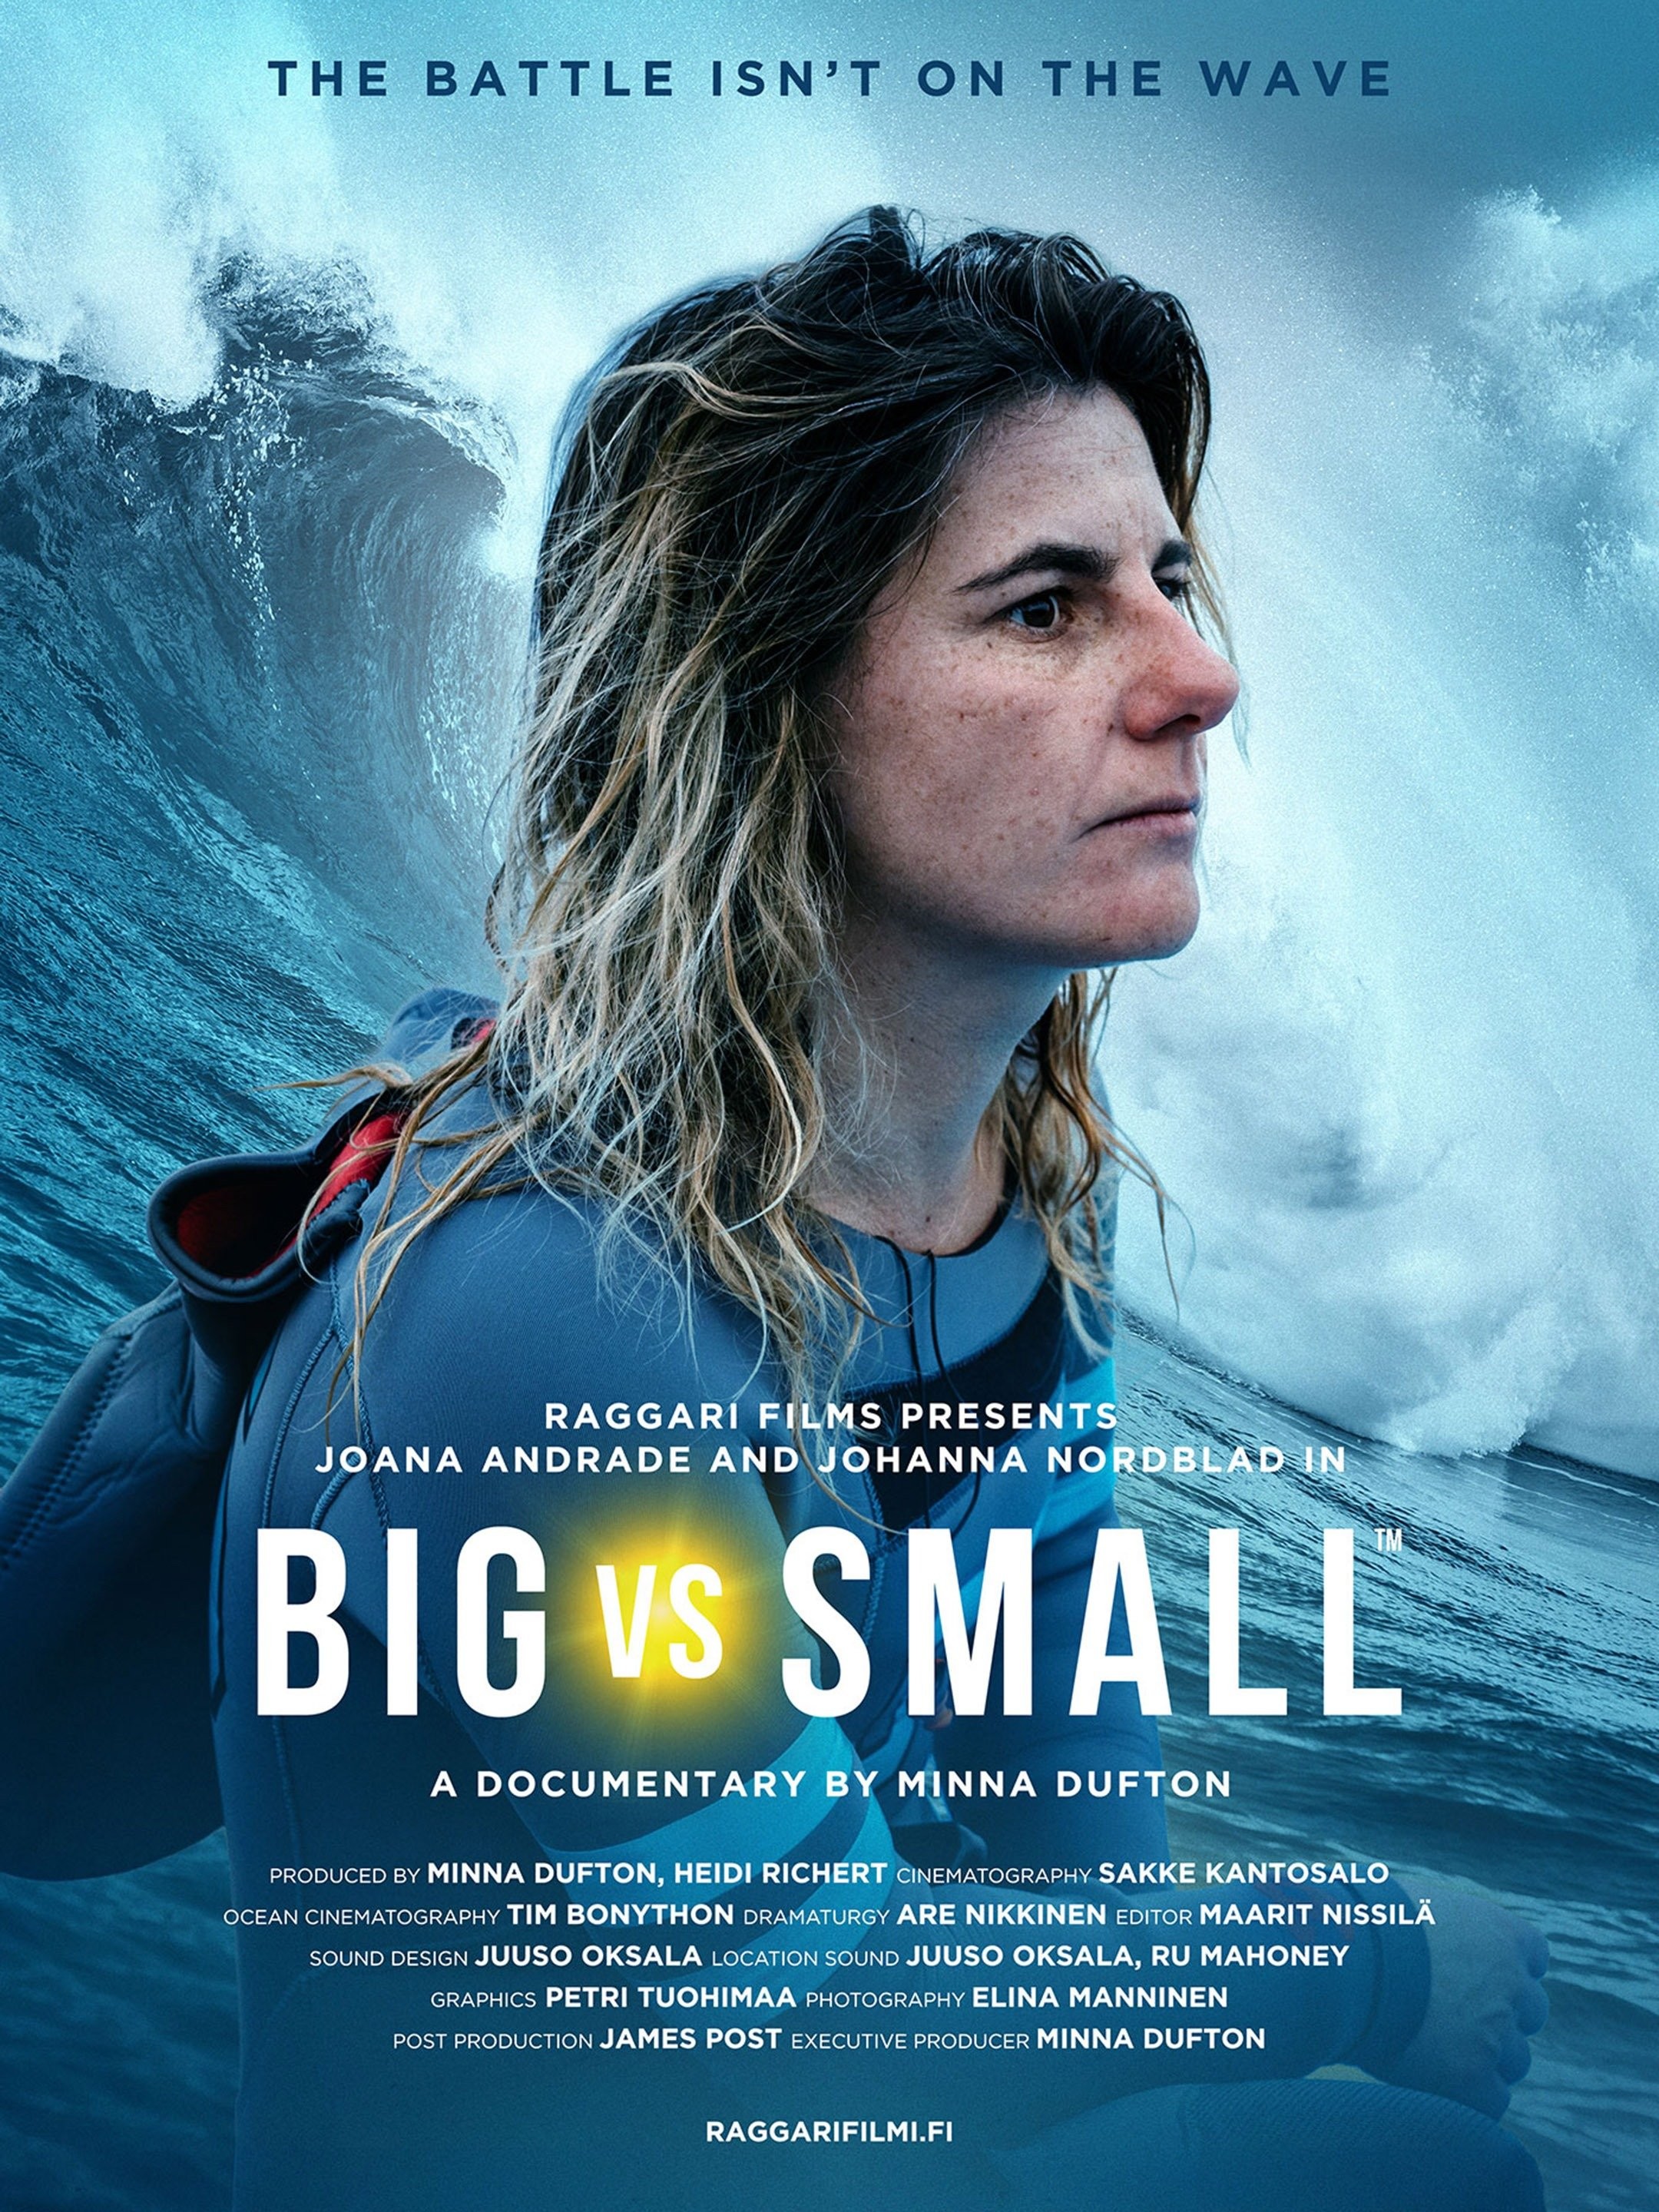 Big vs Small, o melhor filme